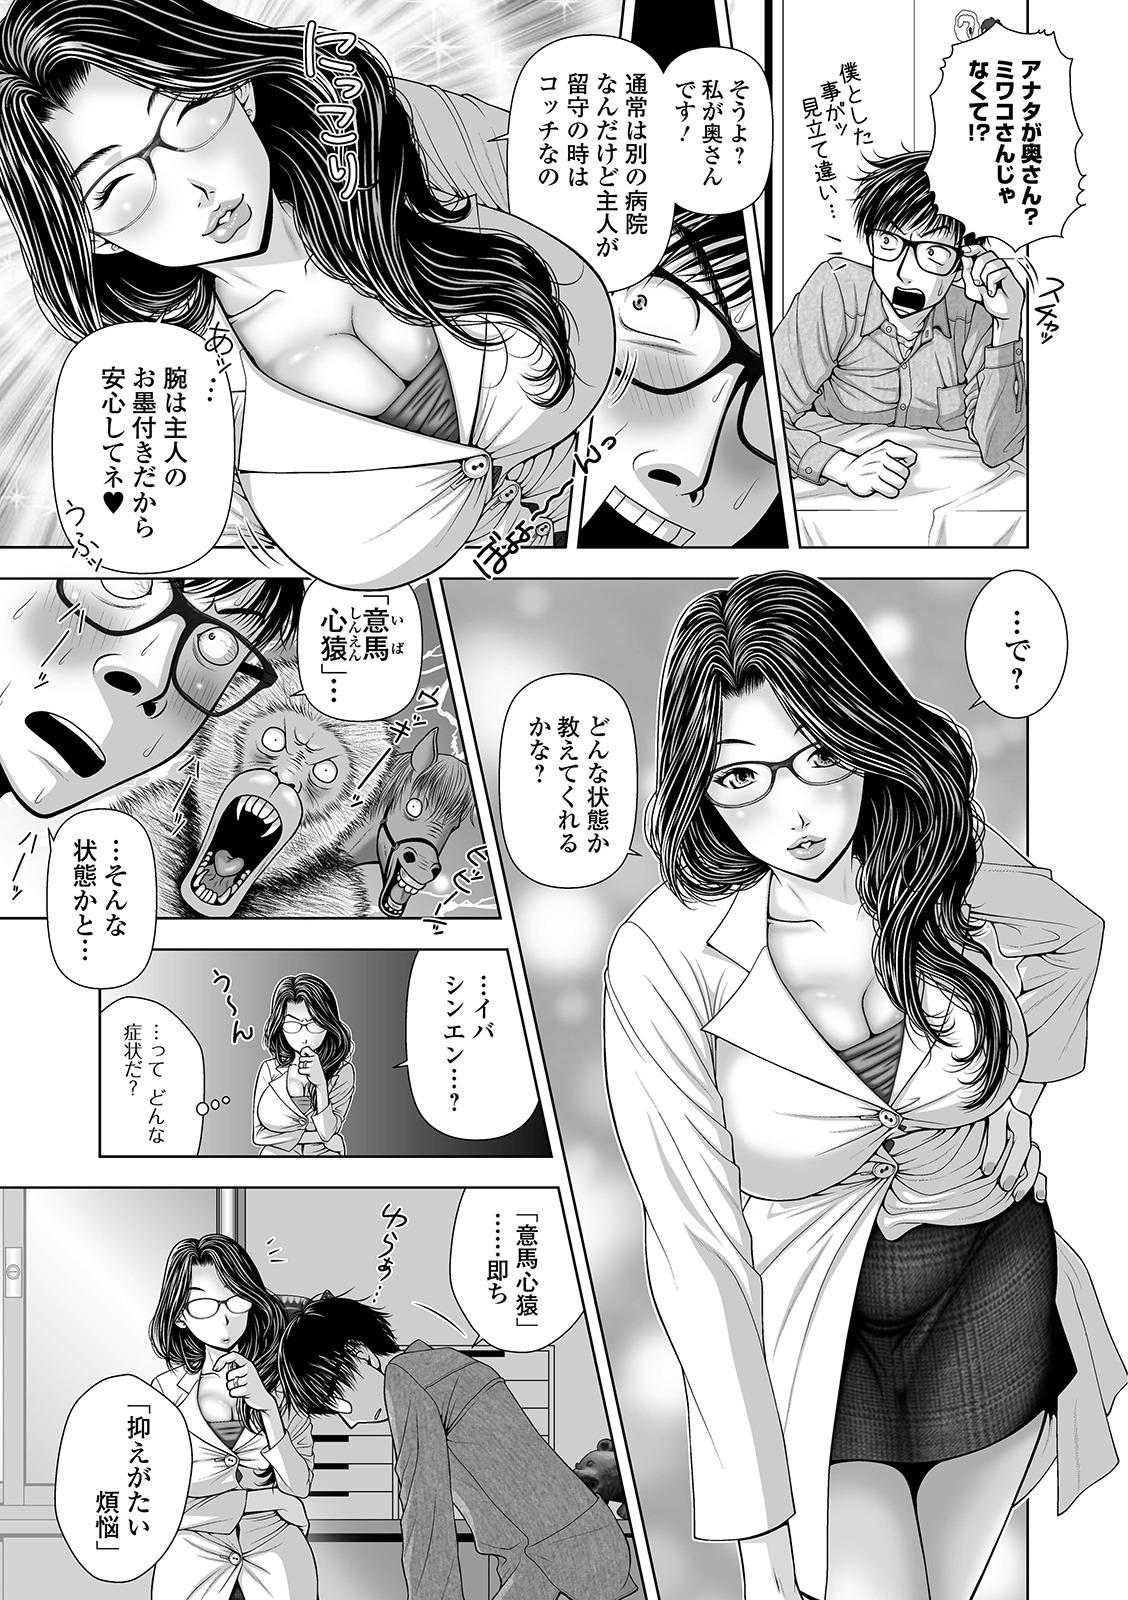 Web Comic Toutetsu Vol. 41 58